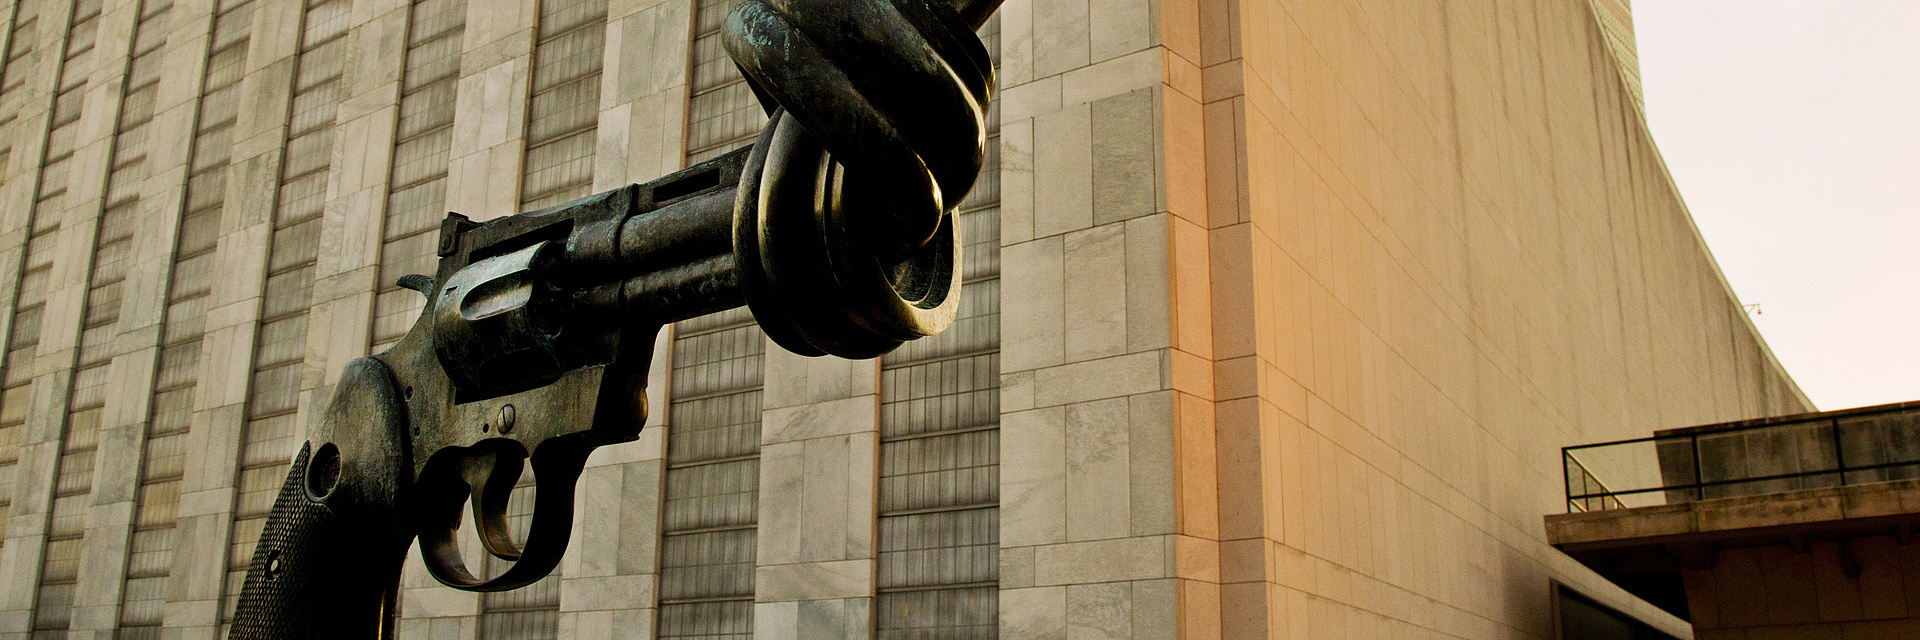 Revolver mit Knoten-Skulptur vor dem UN-Hauptgebäude in New York